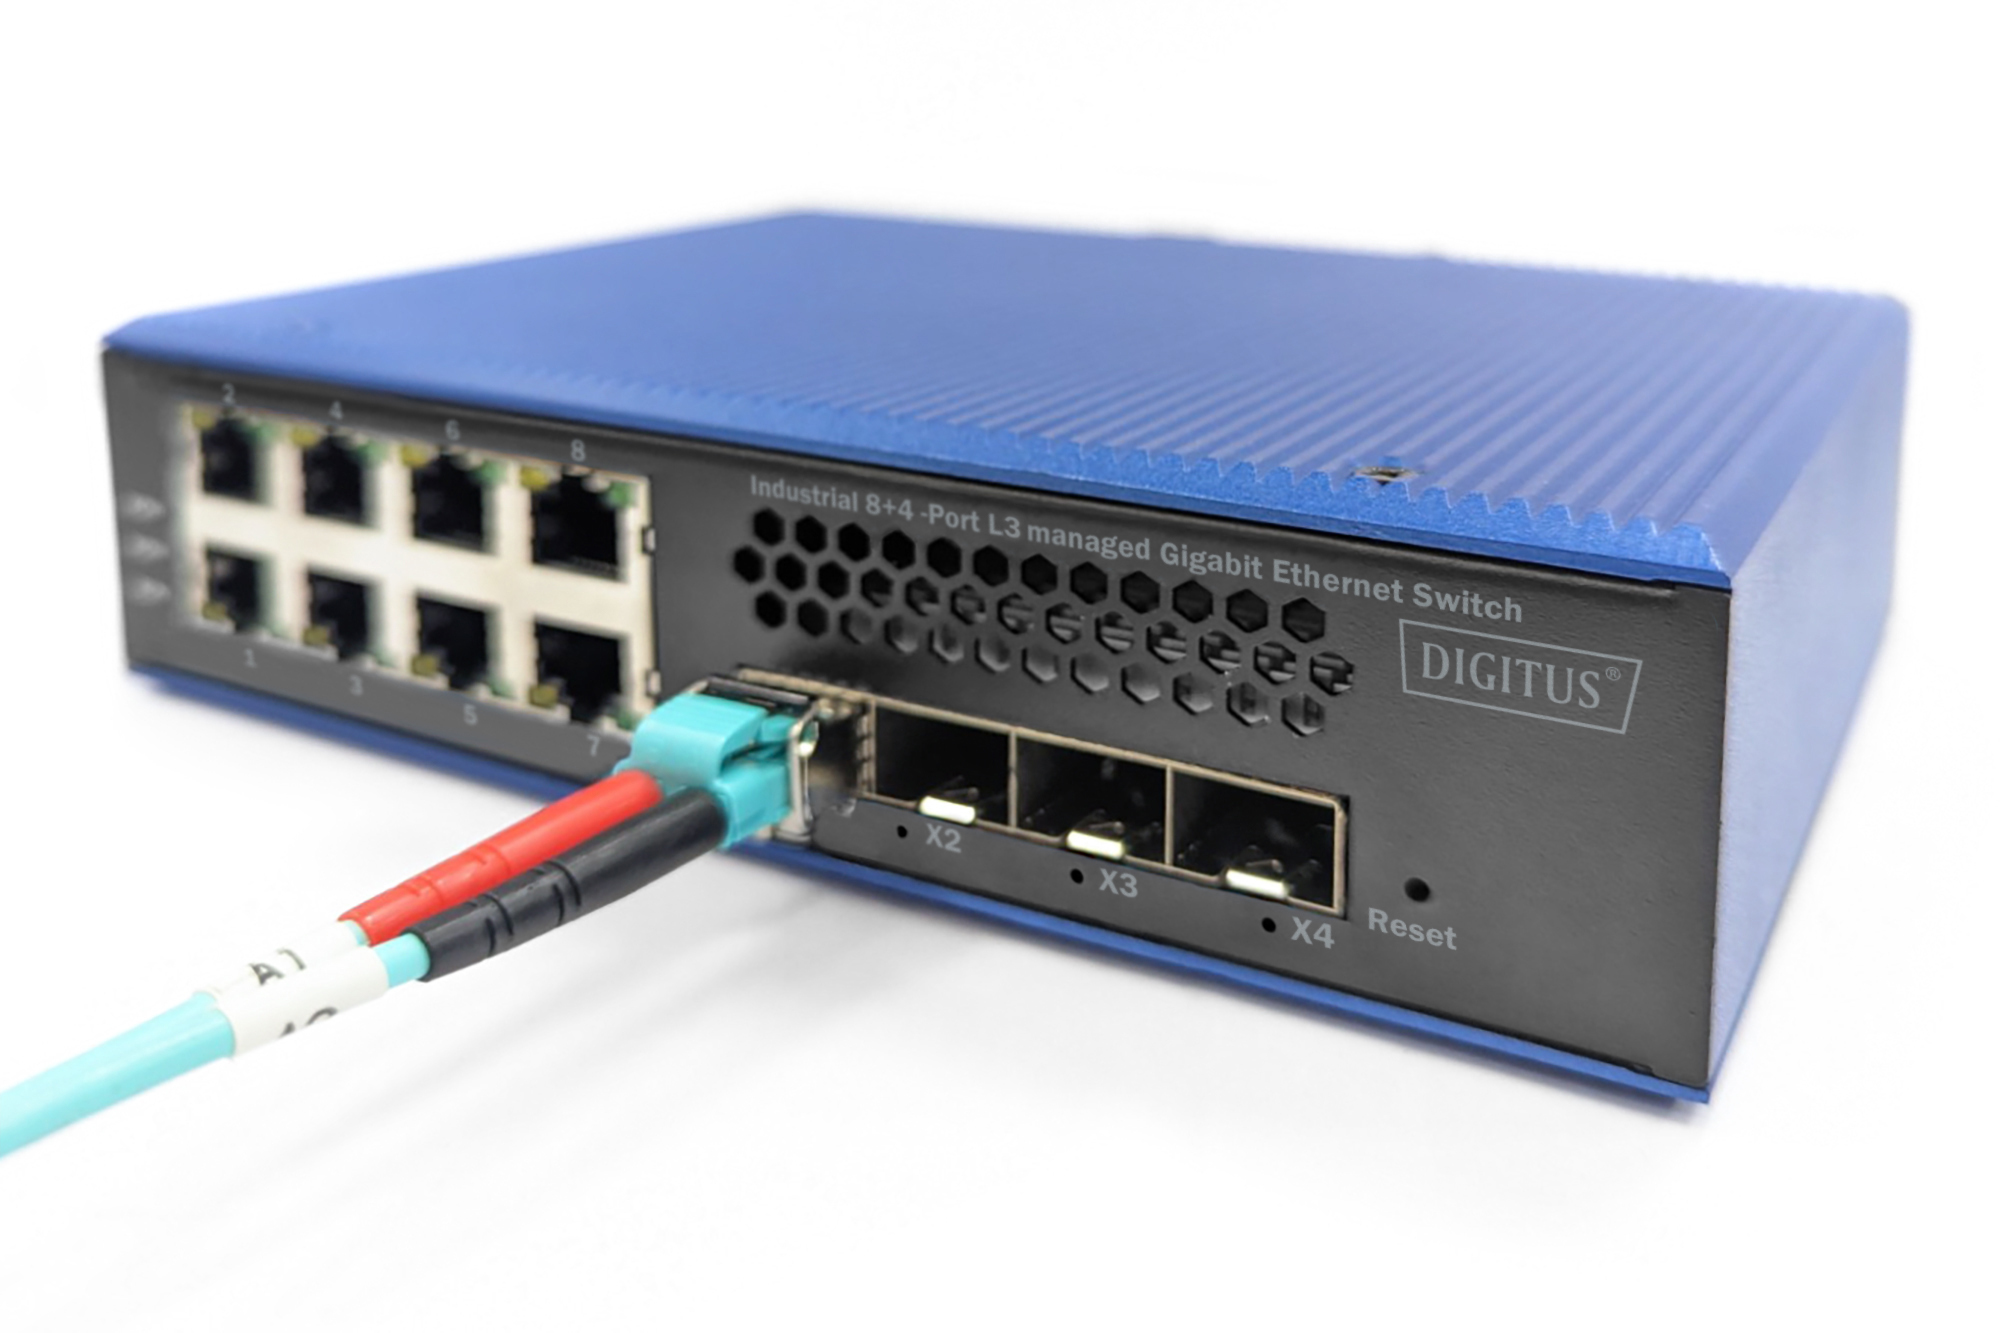 DIGITUS DN-651160 Industrial 8 + 4 10G Uplink Port L3 managed Gigabit Ethernet Switch